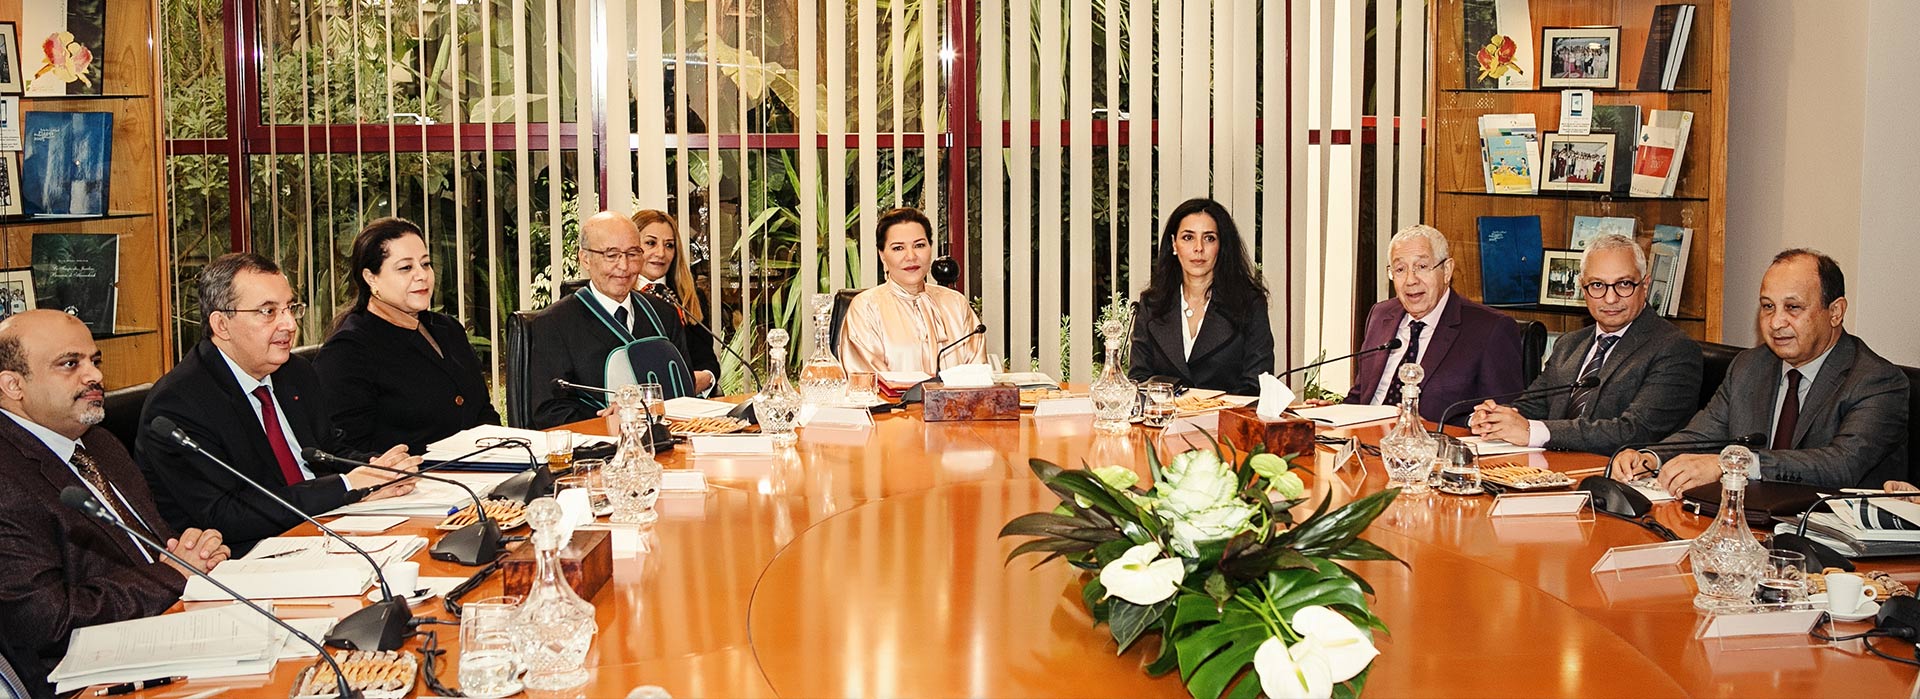 21 janvier 2016 : <strong>Son Altesse Royale la Princesse Lalla Hasnaa</strong> préside le Conseil d’Administration de la Fondation Mohammed VI pour la Protection de l’Environnement